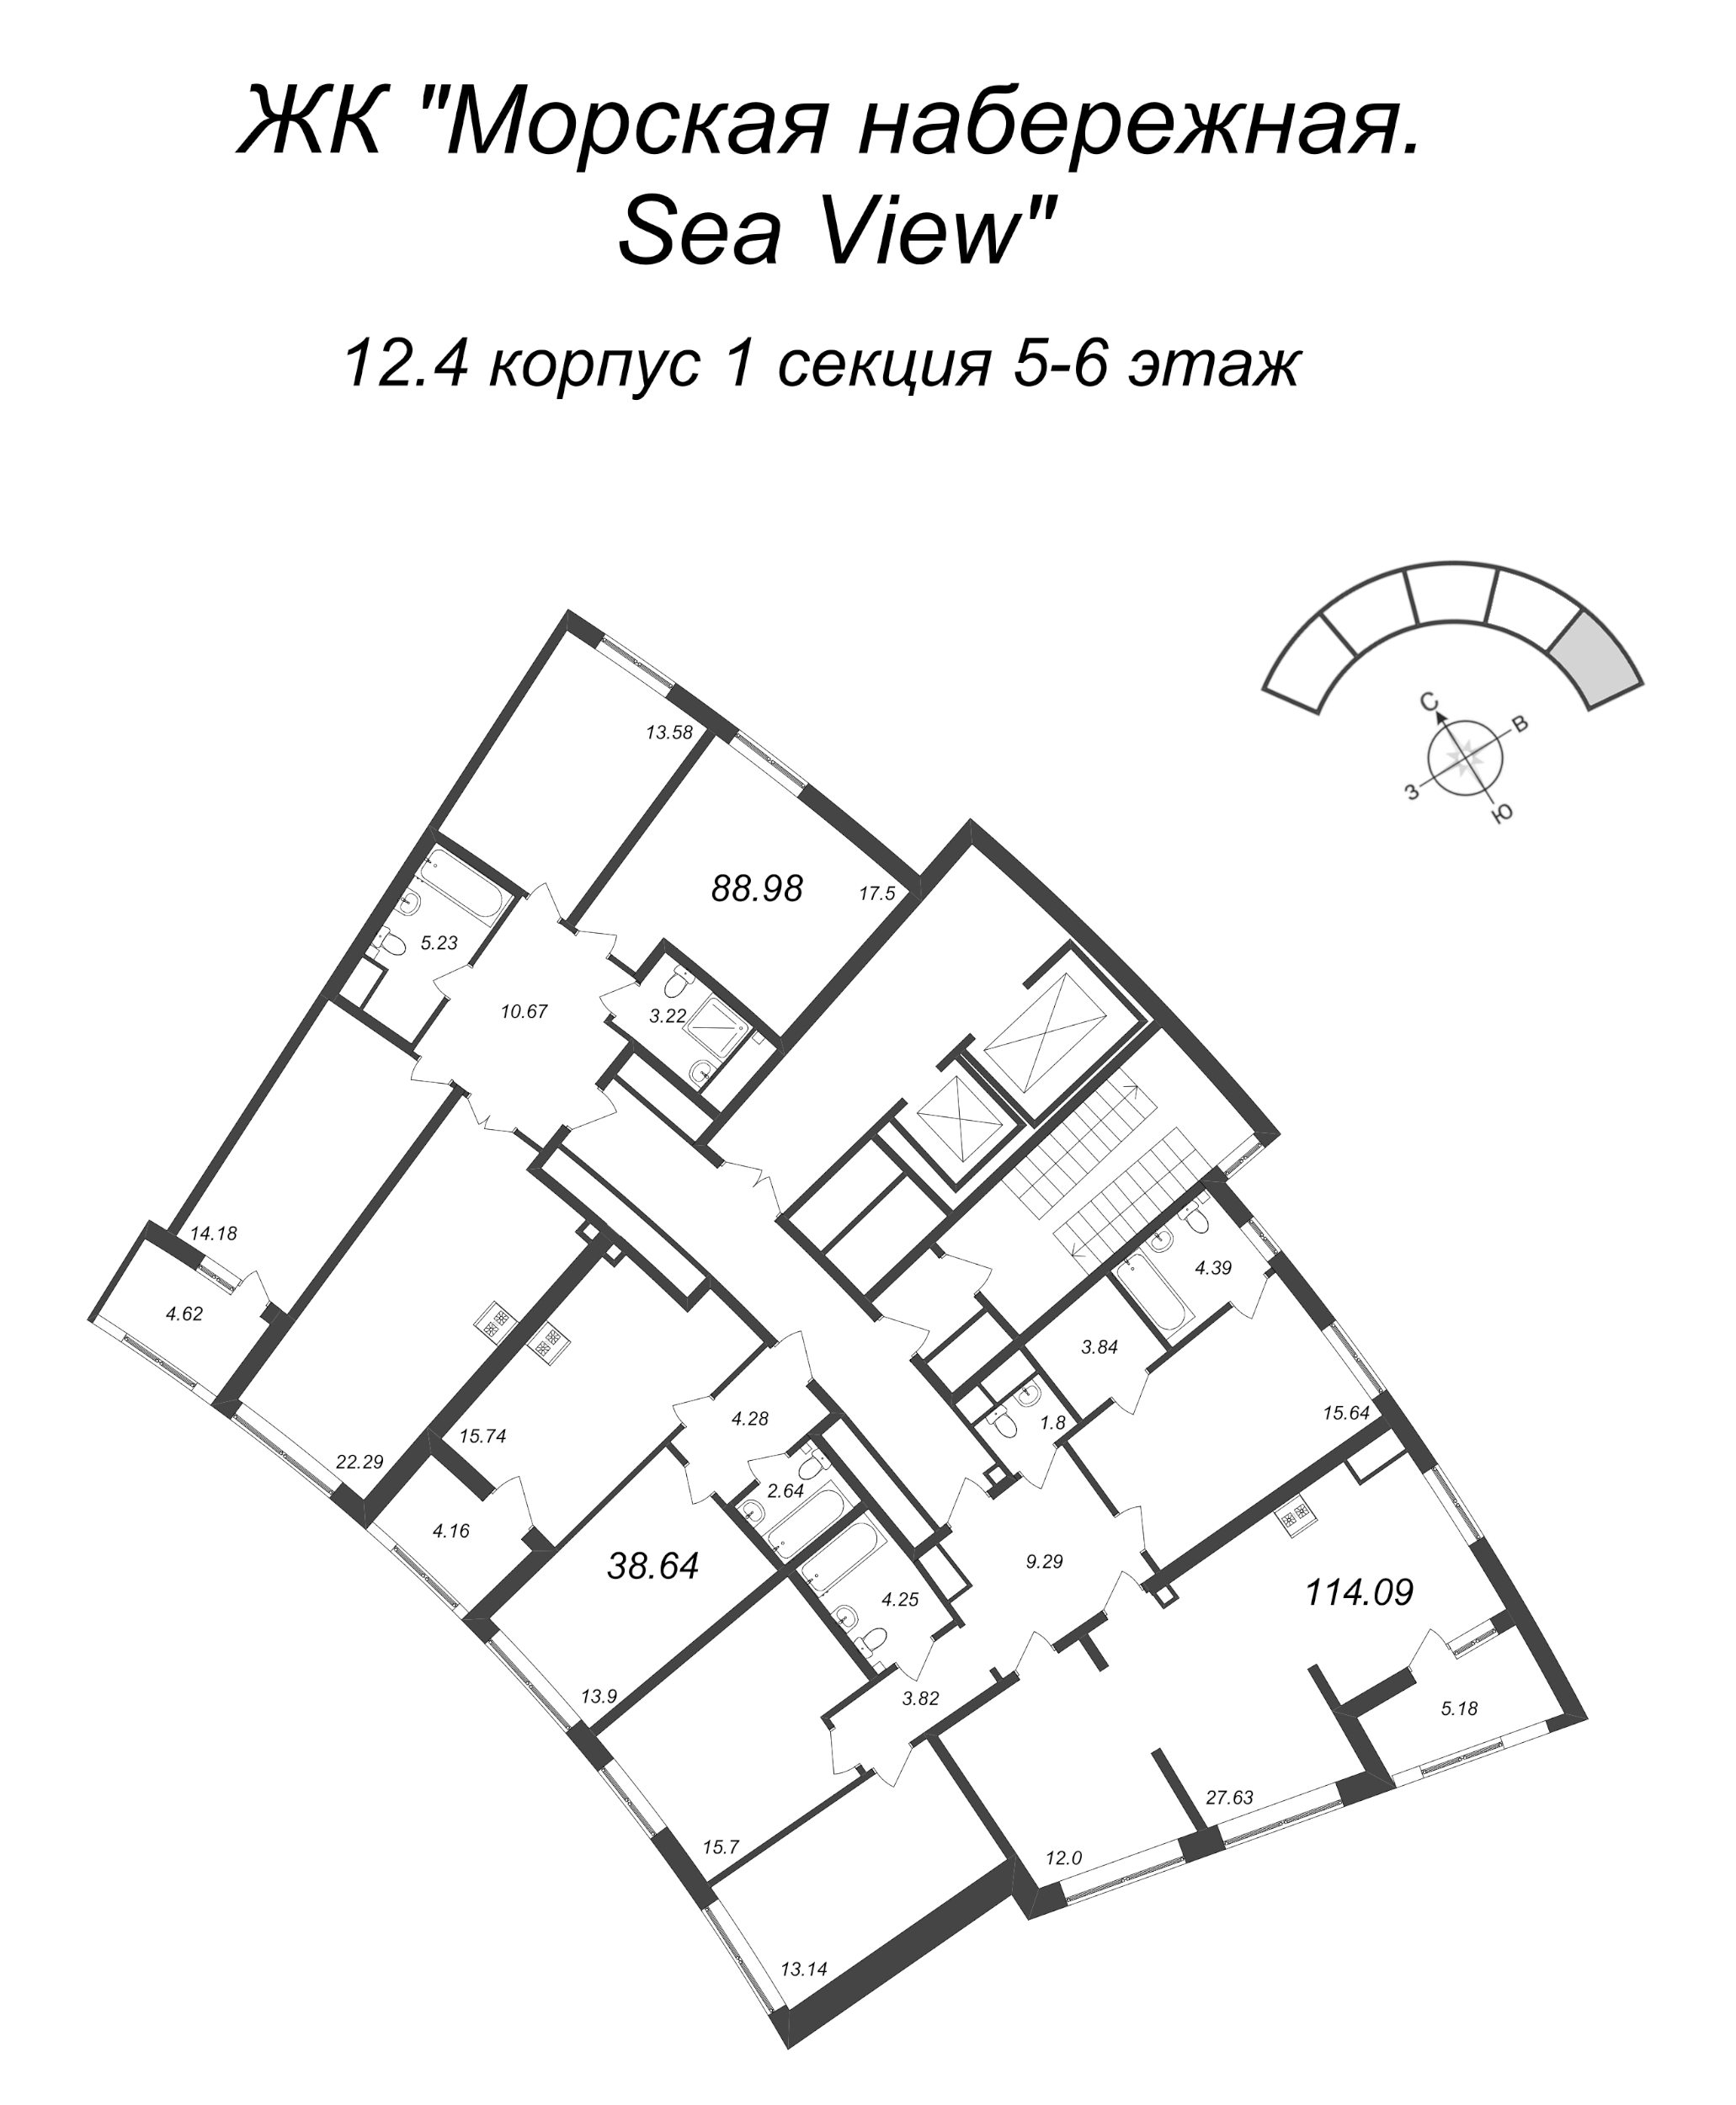 5-комнатная (Евро) квартира, 114.09 м² в ЖК "Морская набережная. SeaView" - планировка этажа